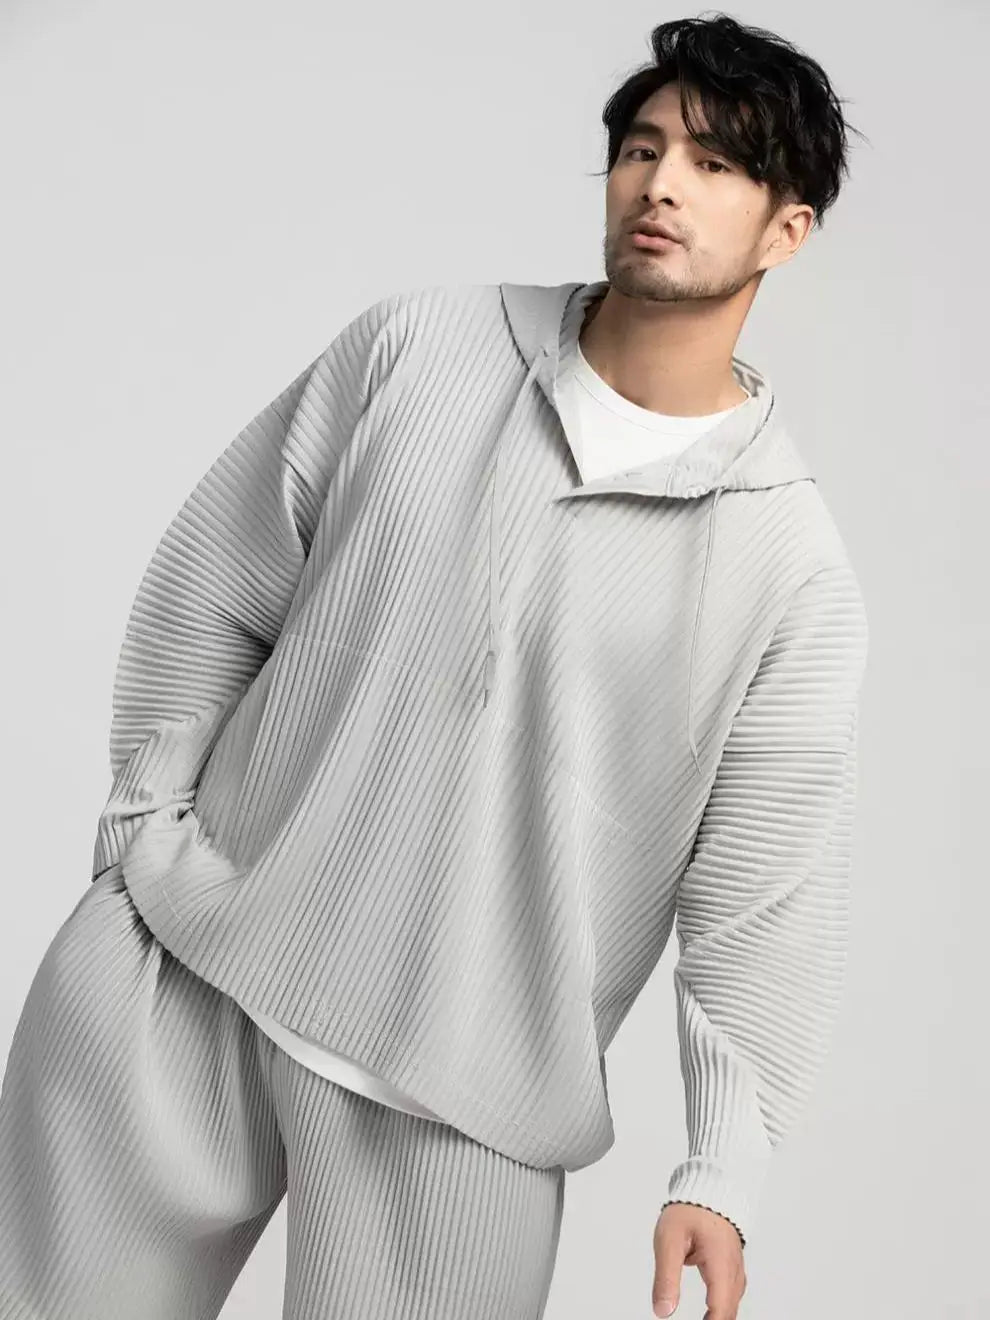 Miyake Pleated Hoodies For Men light grey hoodie 